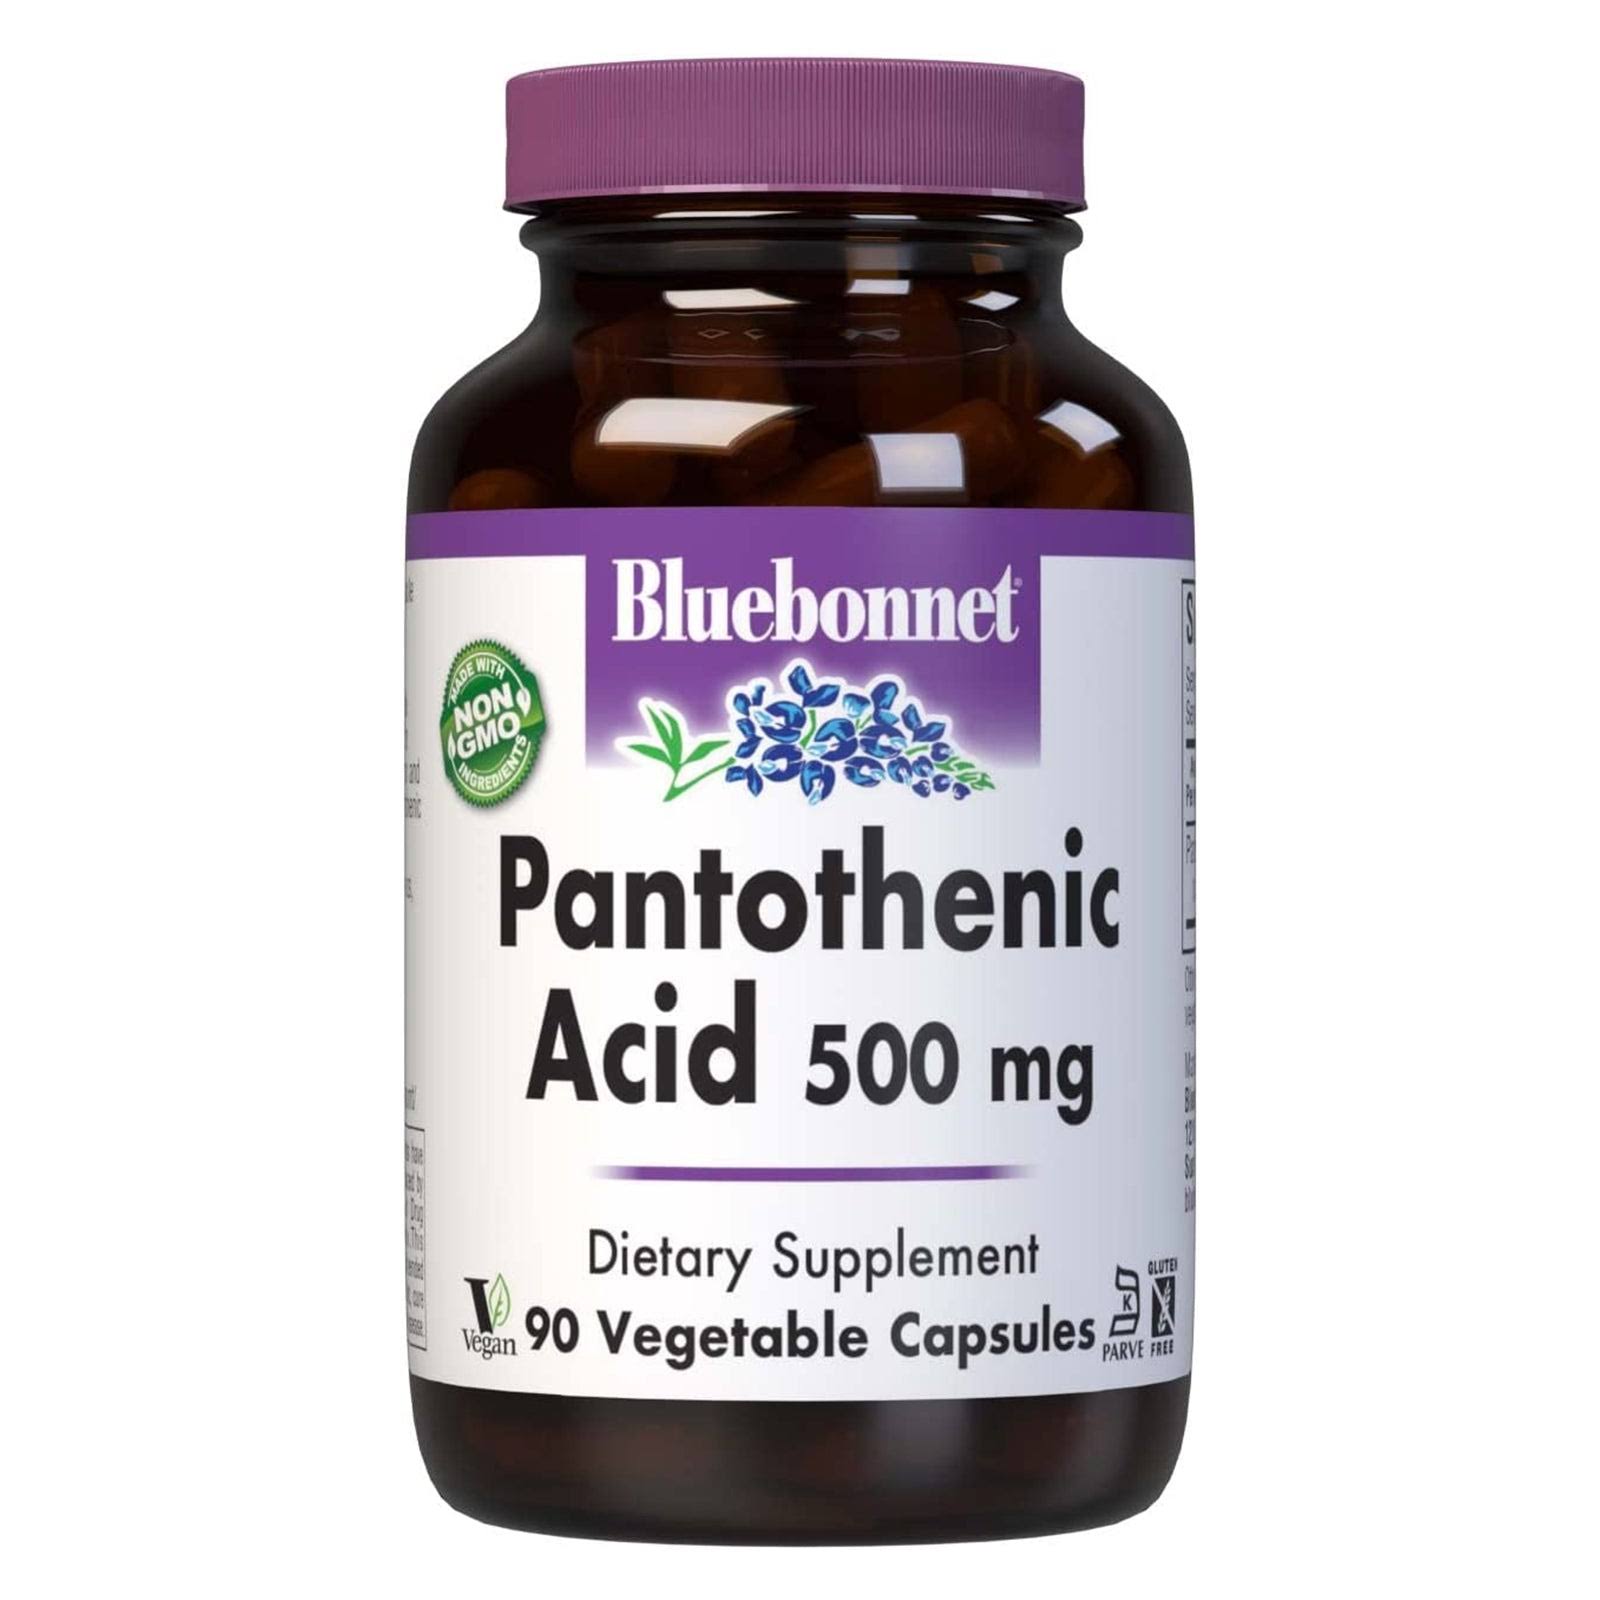 Bluebonnet Pantothenic Acid 500 MG Vegetable Capsules, 90 Count